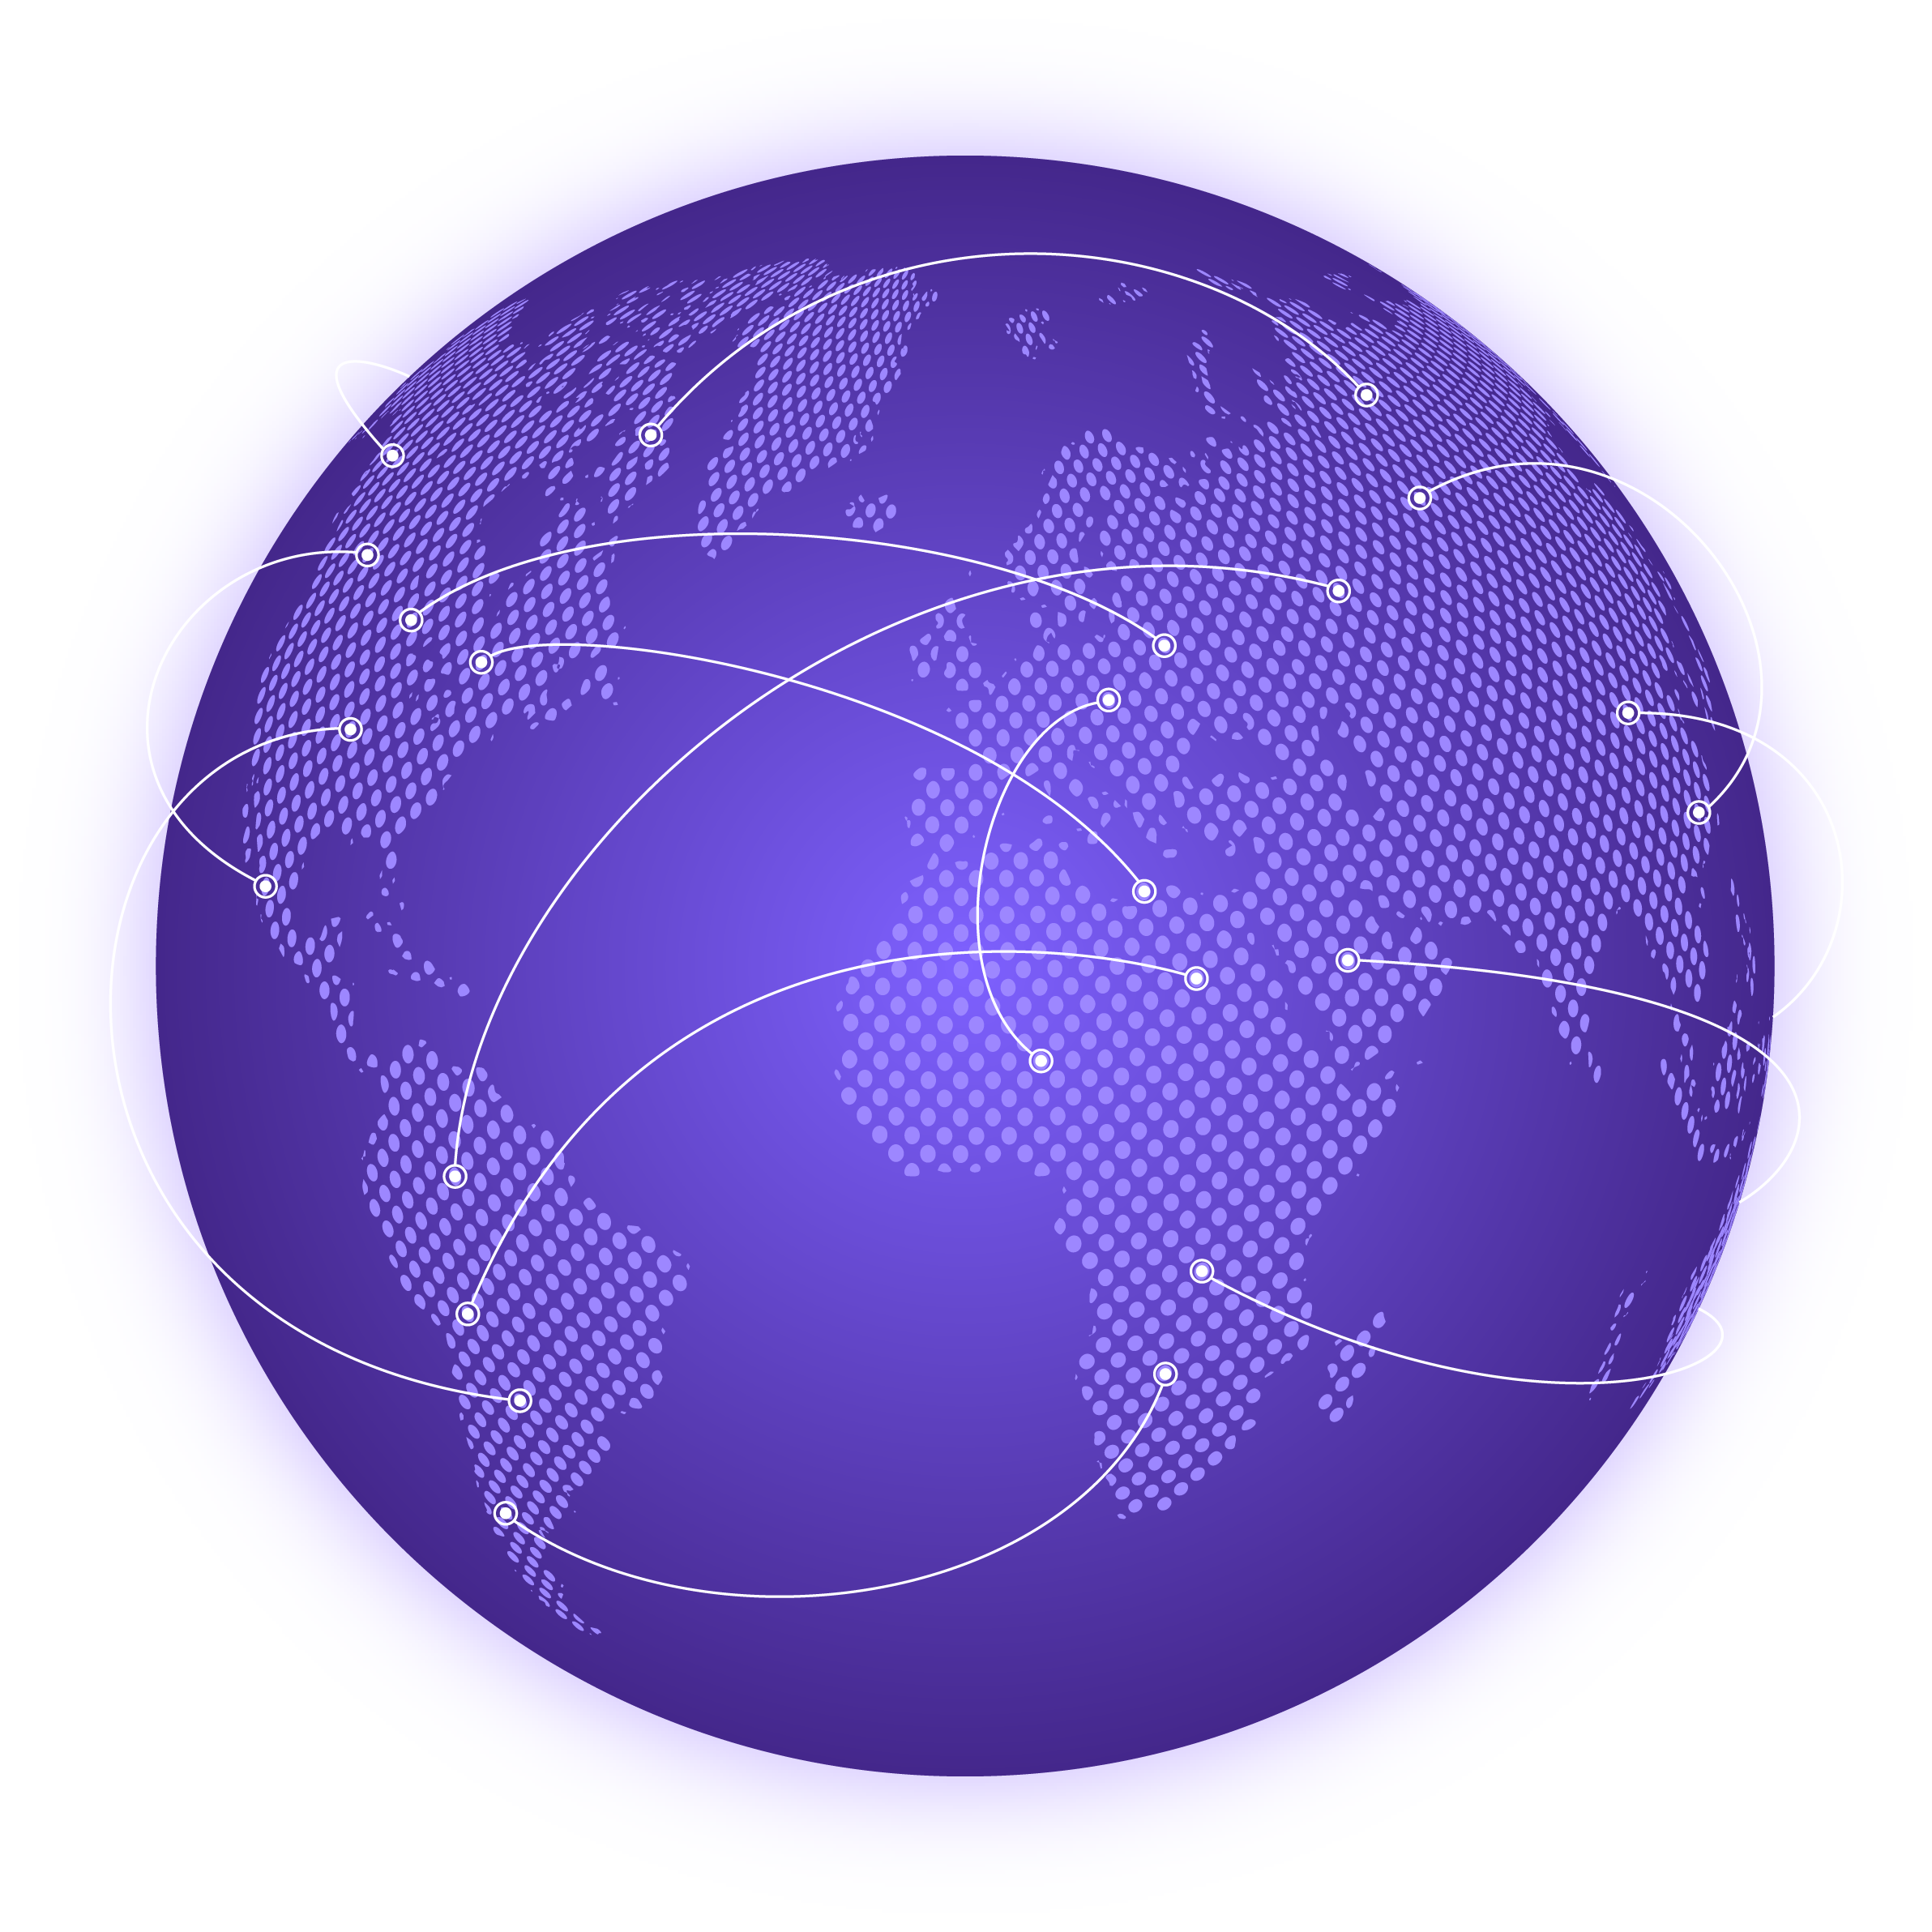 Globus mit mehreren bogenförmigen Linien, die verschiedene Kontinente verbinden